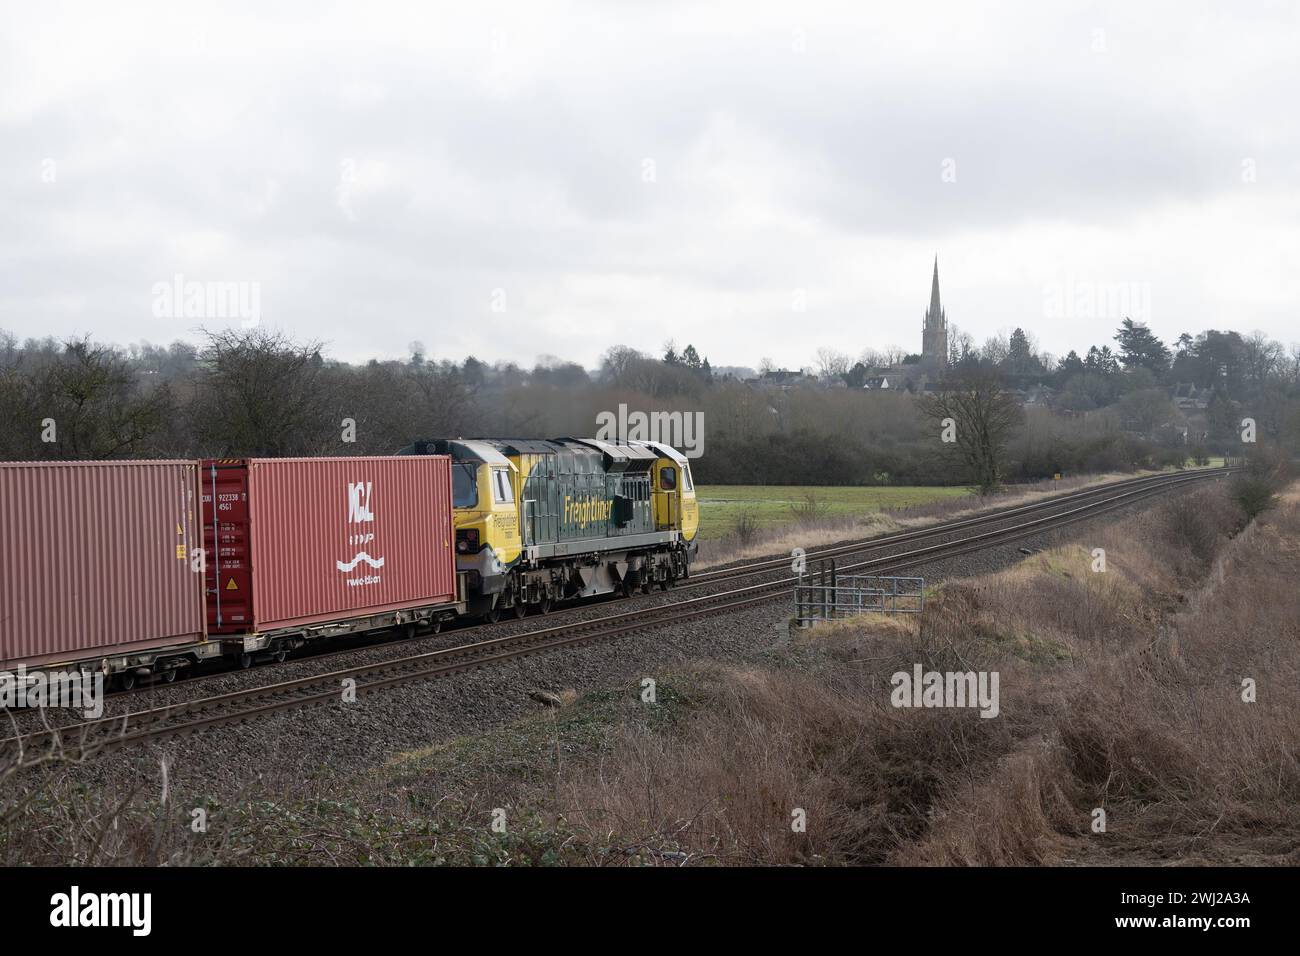 Locomotive diesel de classe 70 n° 70001 tirant un train freightliner près de Kings Sutton, Northamptonshire, Angleterre, Royaume-Uni Banque D'Images